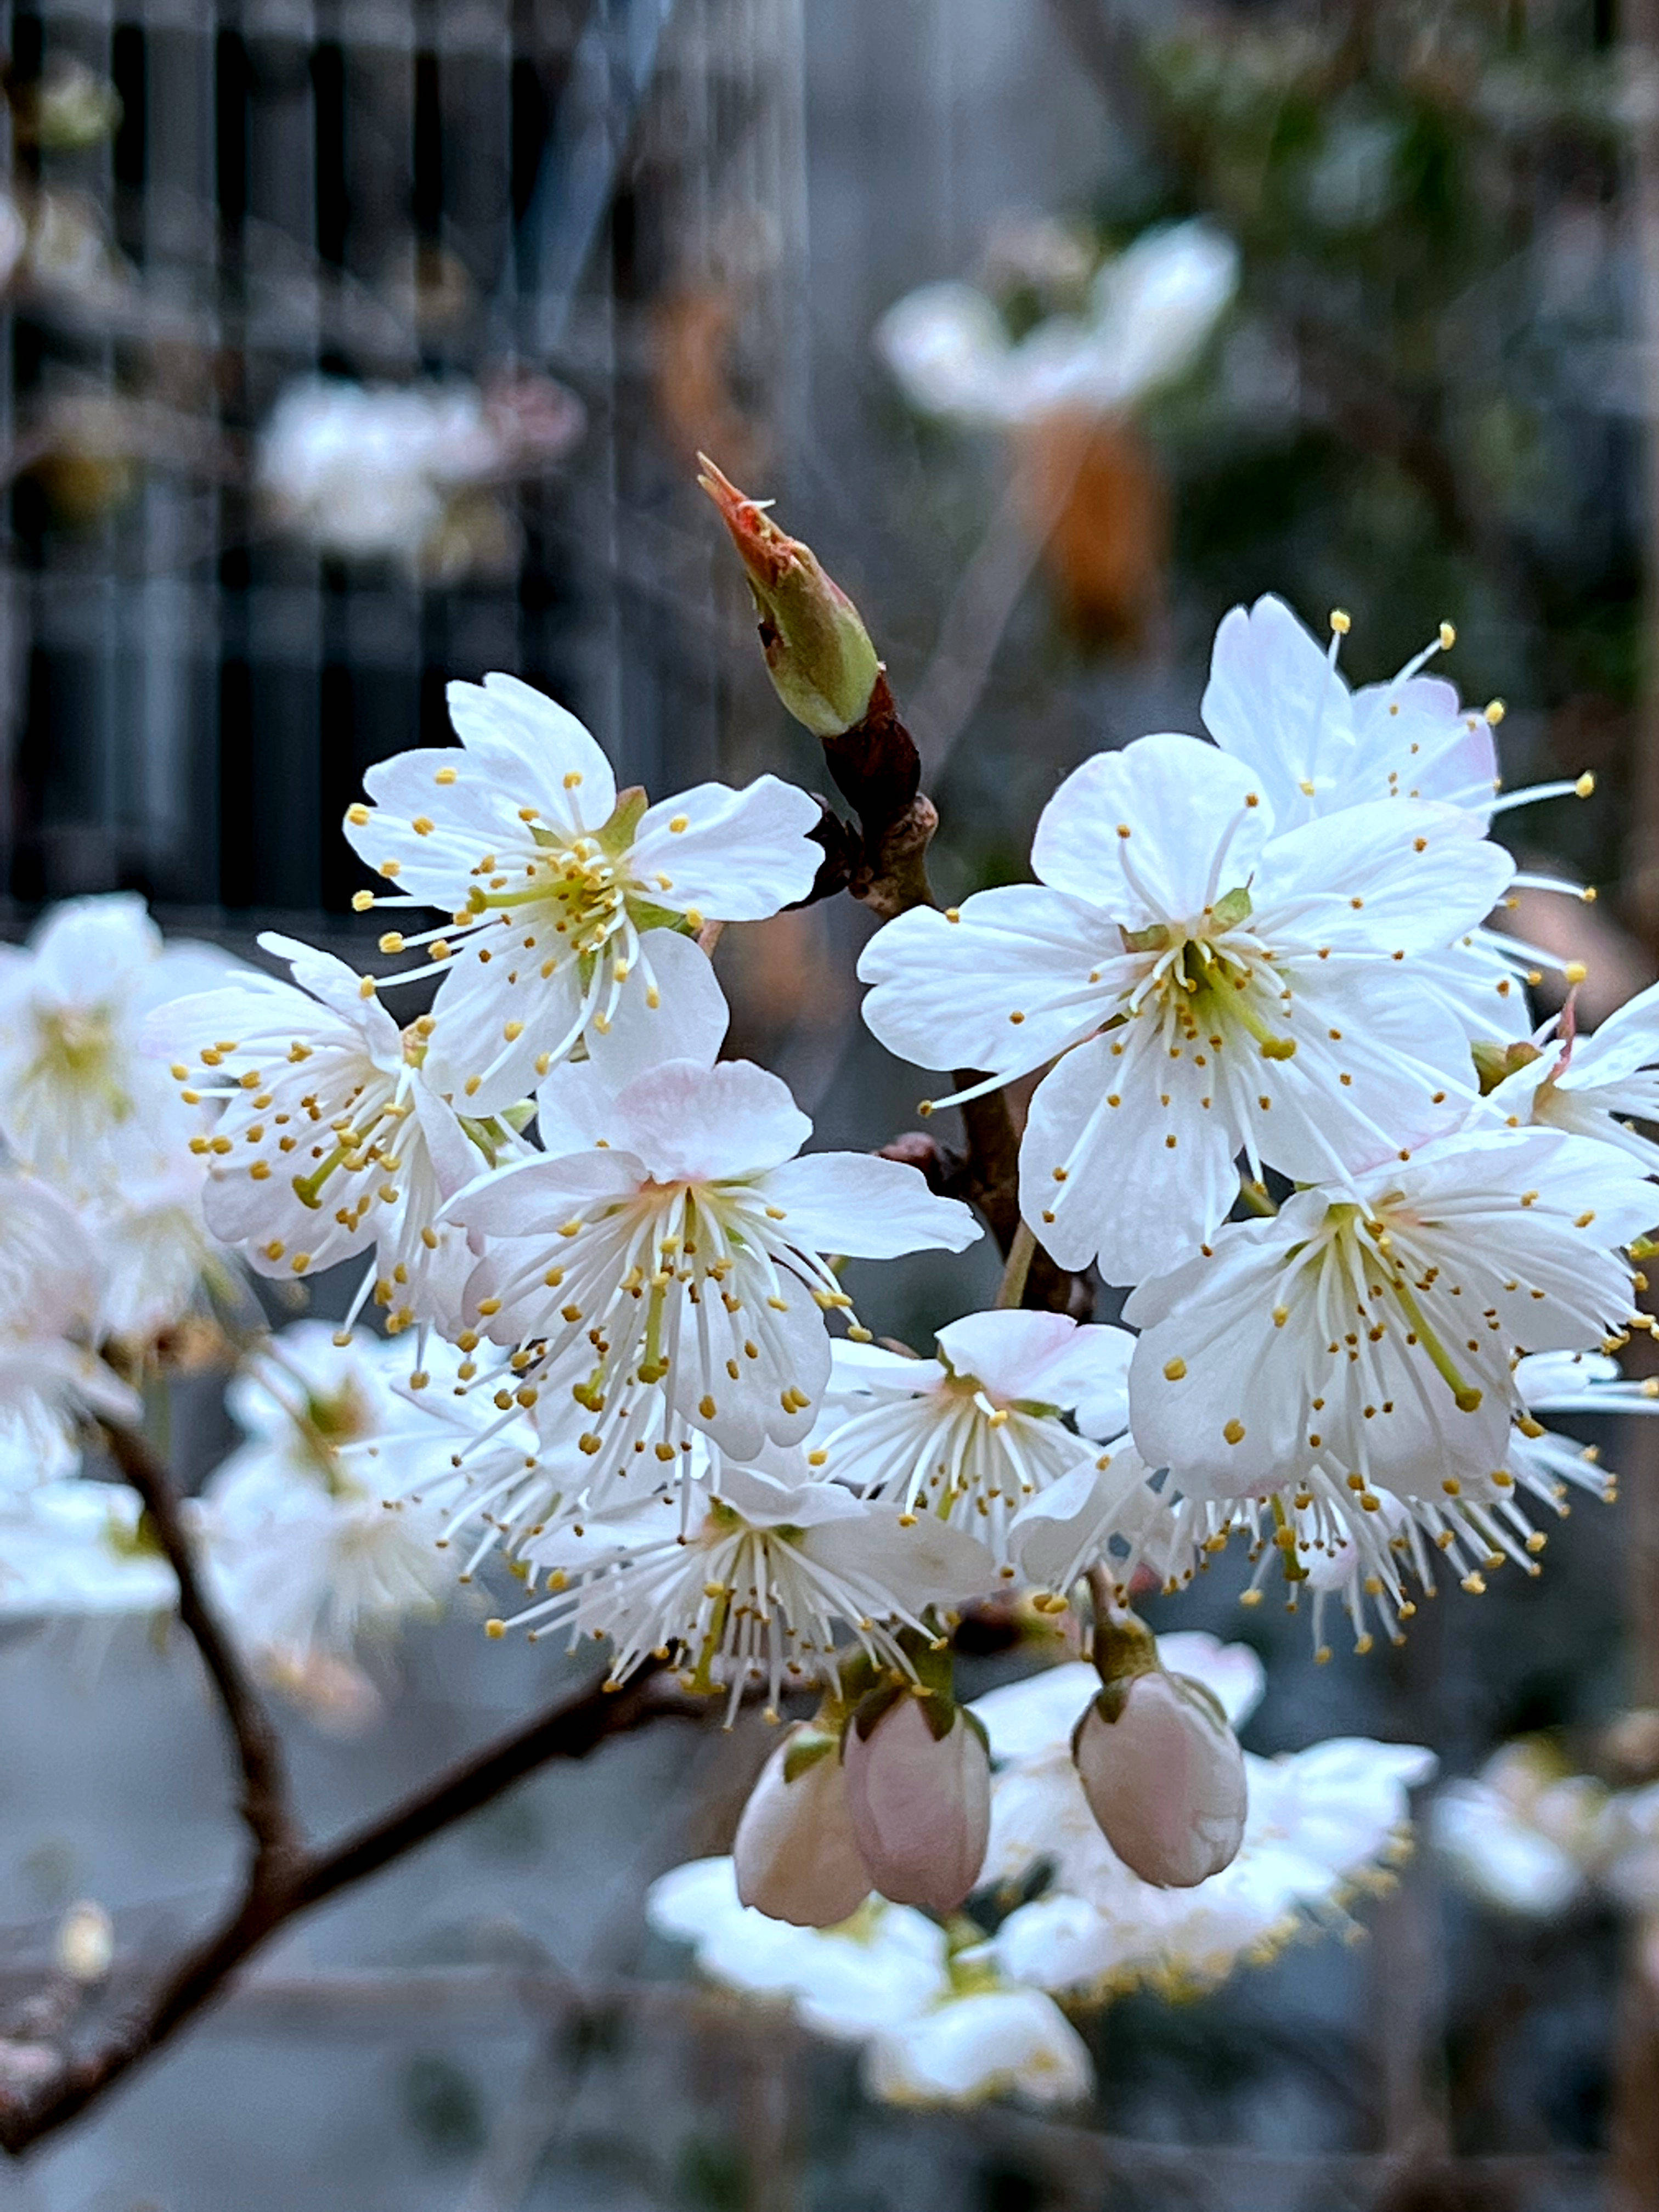 原创三月樱桃花悄然绽放为春天增添一抹靓丽颜色